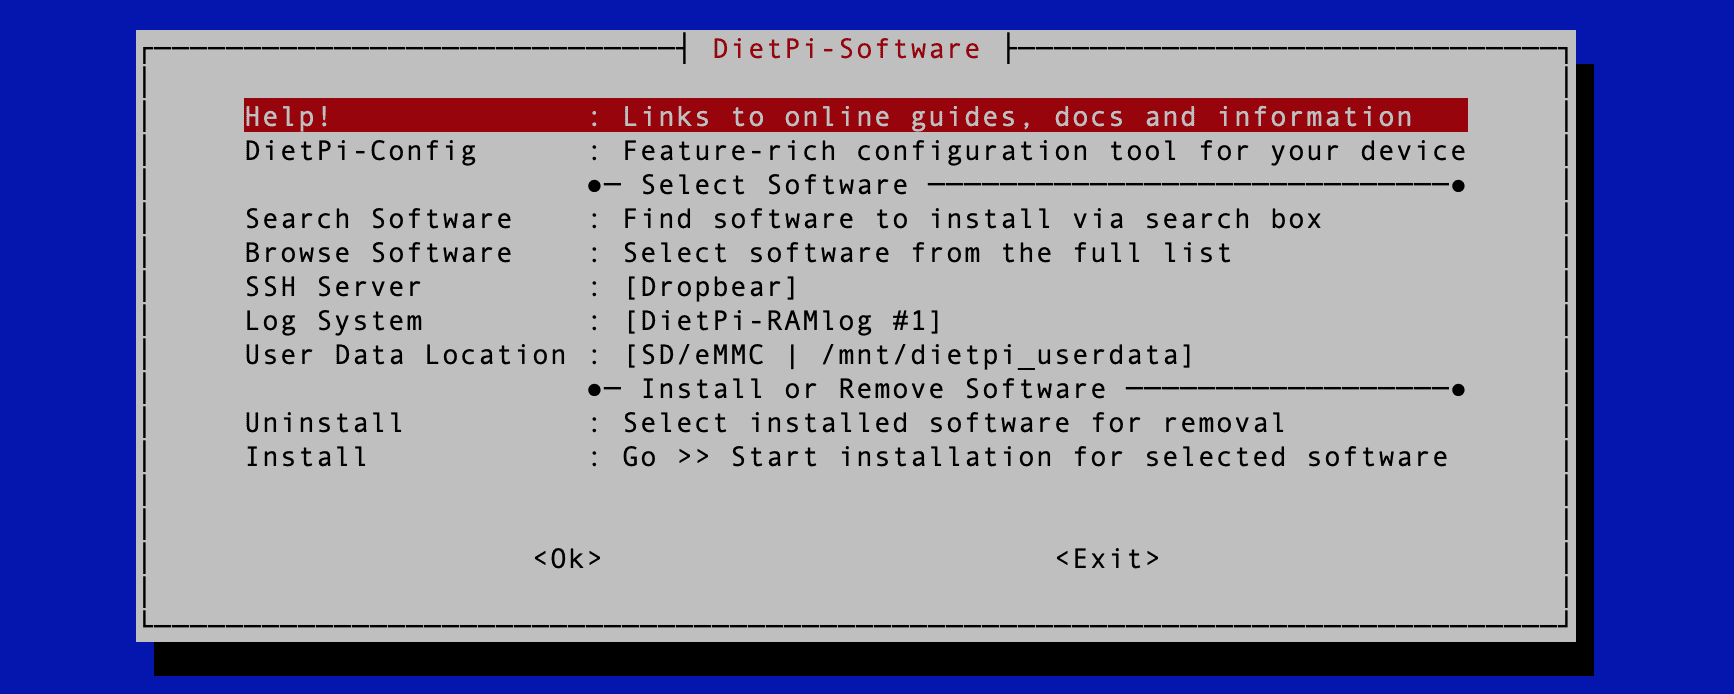 dietpi software